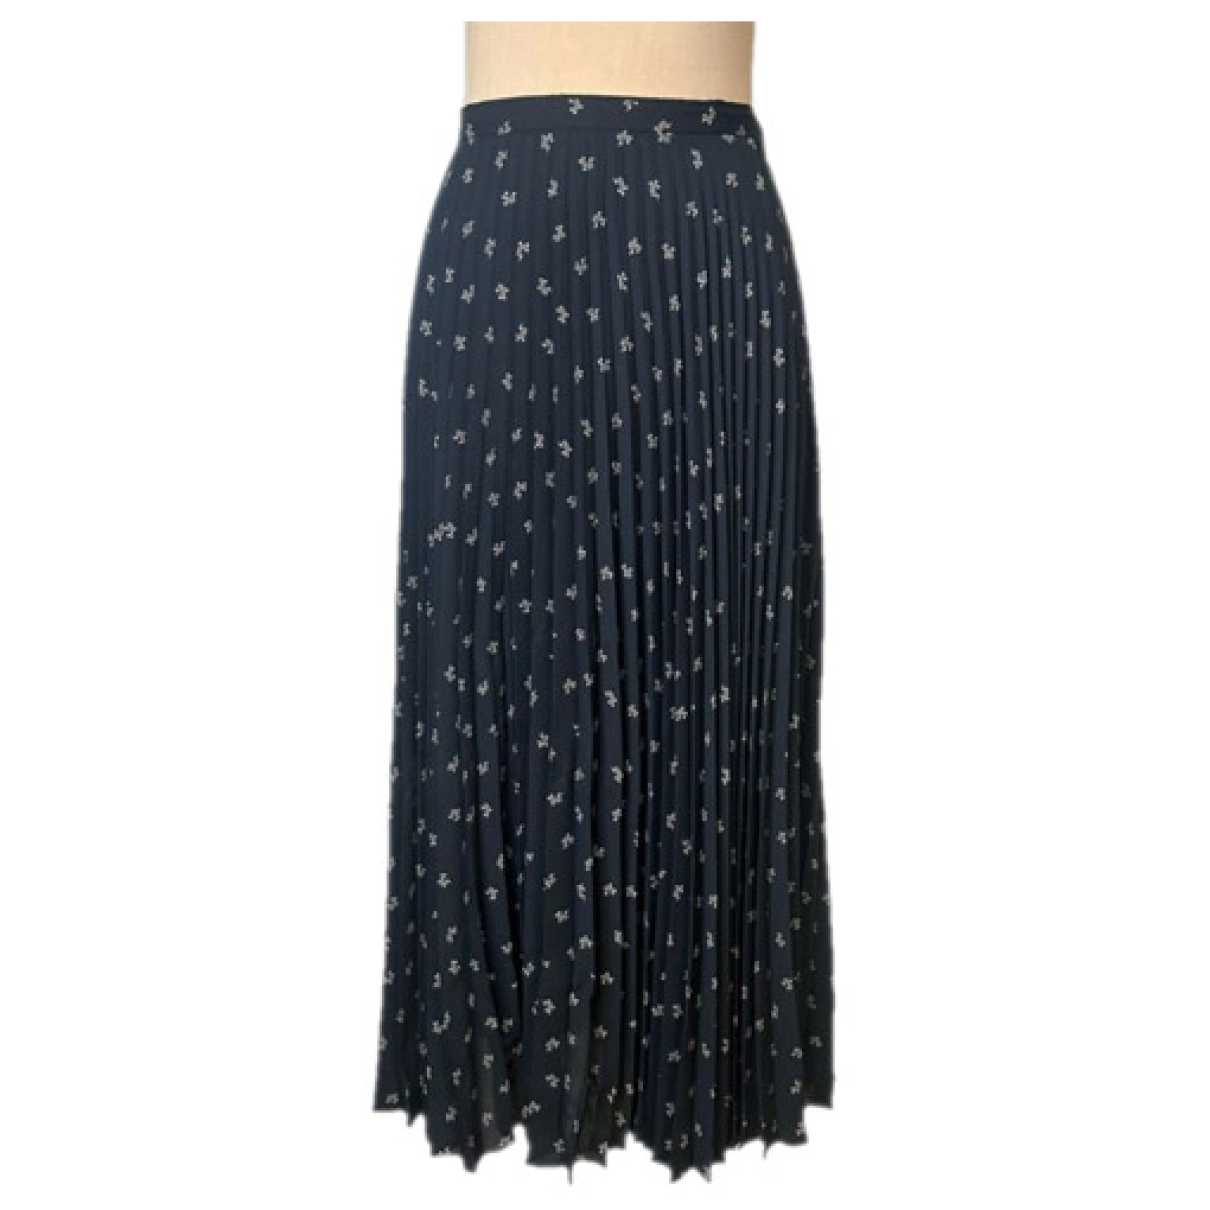 Black Mid-length Skirt